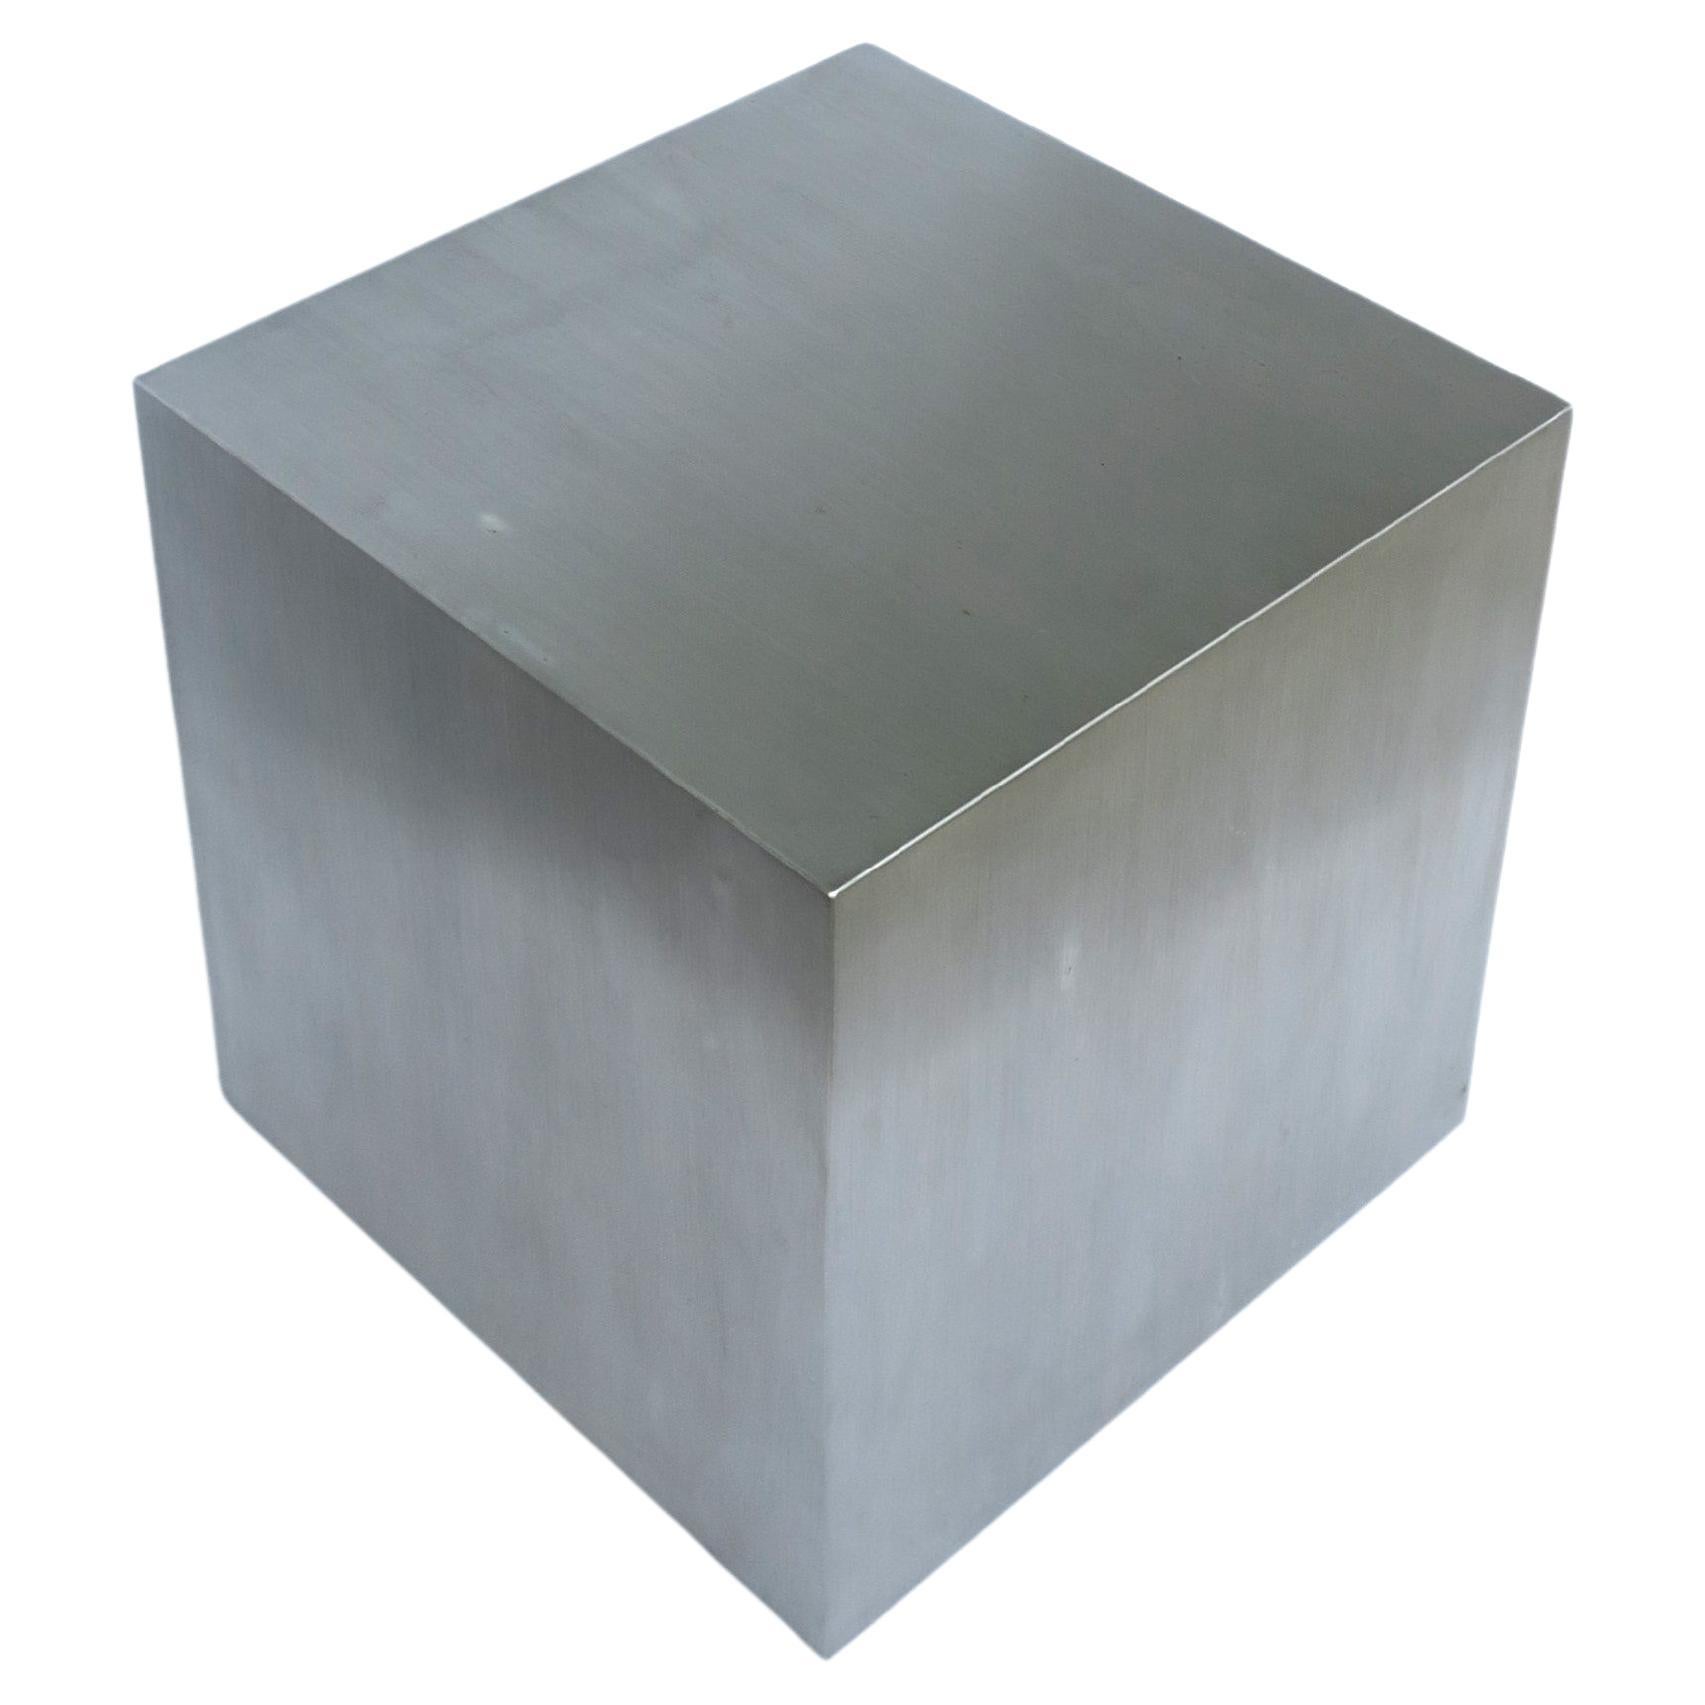 Steel Cube End Table Pedestal Minimalist 